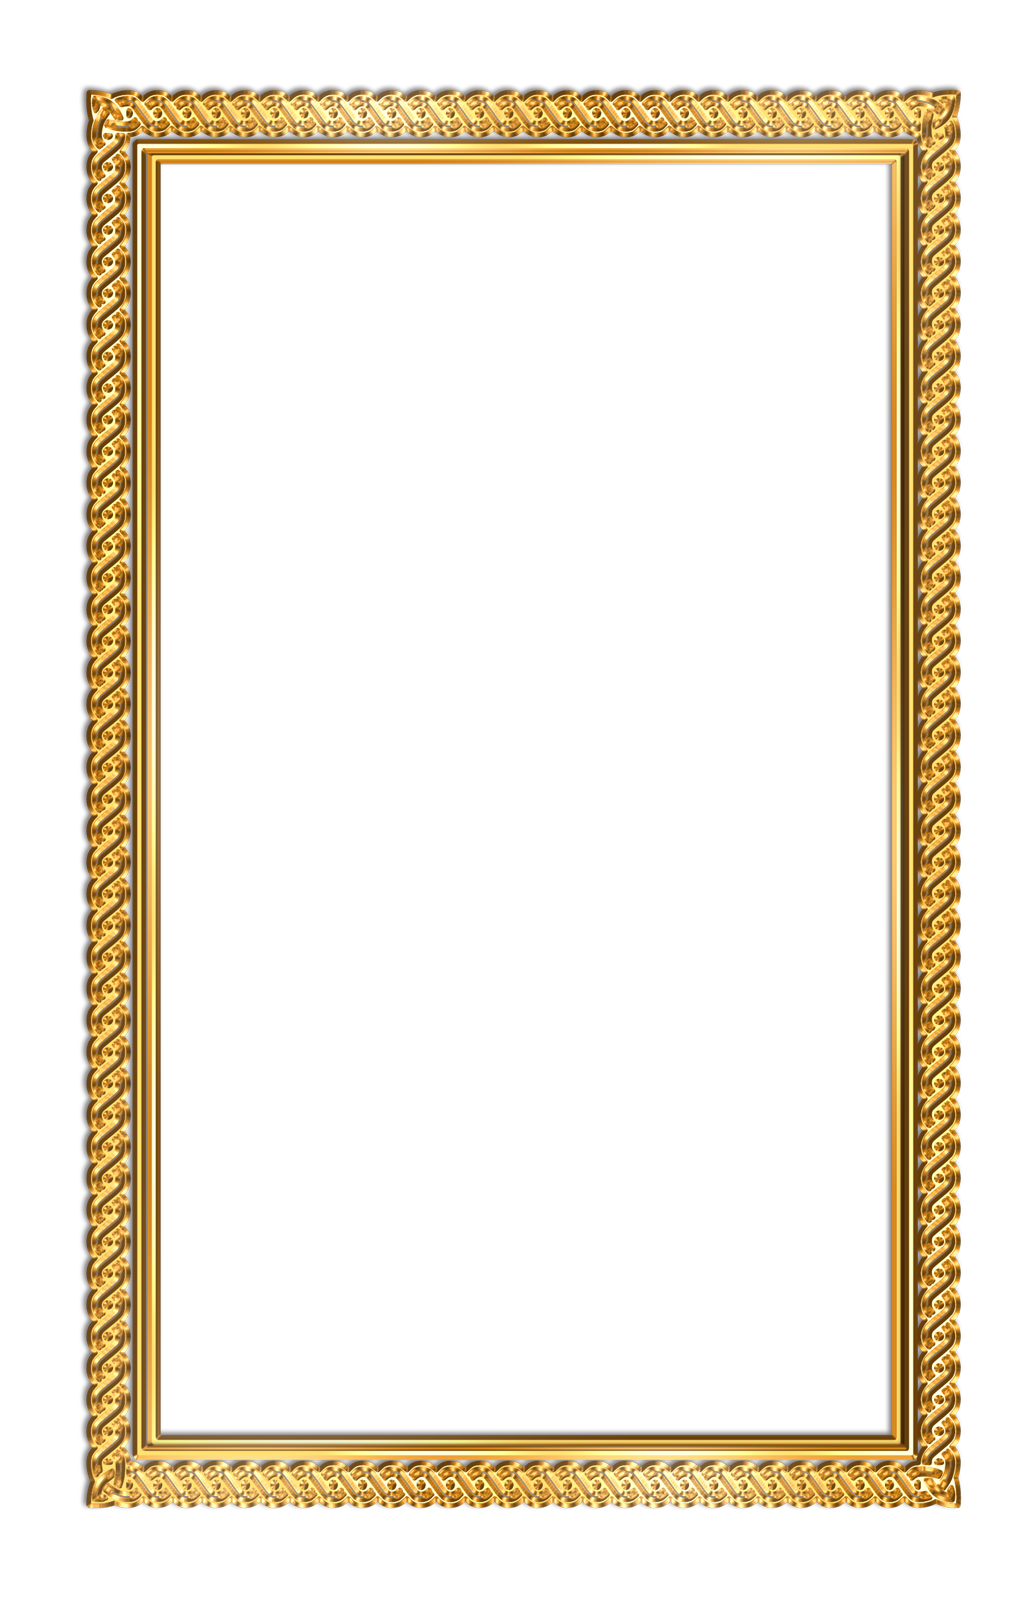 Ornate Golden Frameon Teal Background PNG